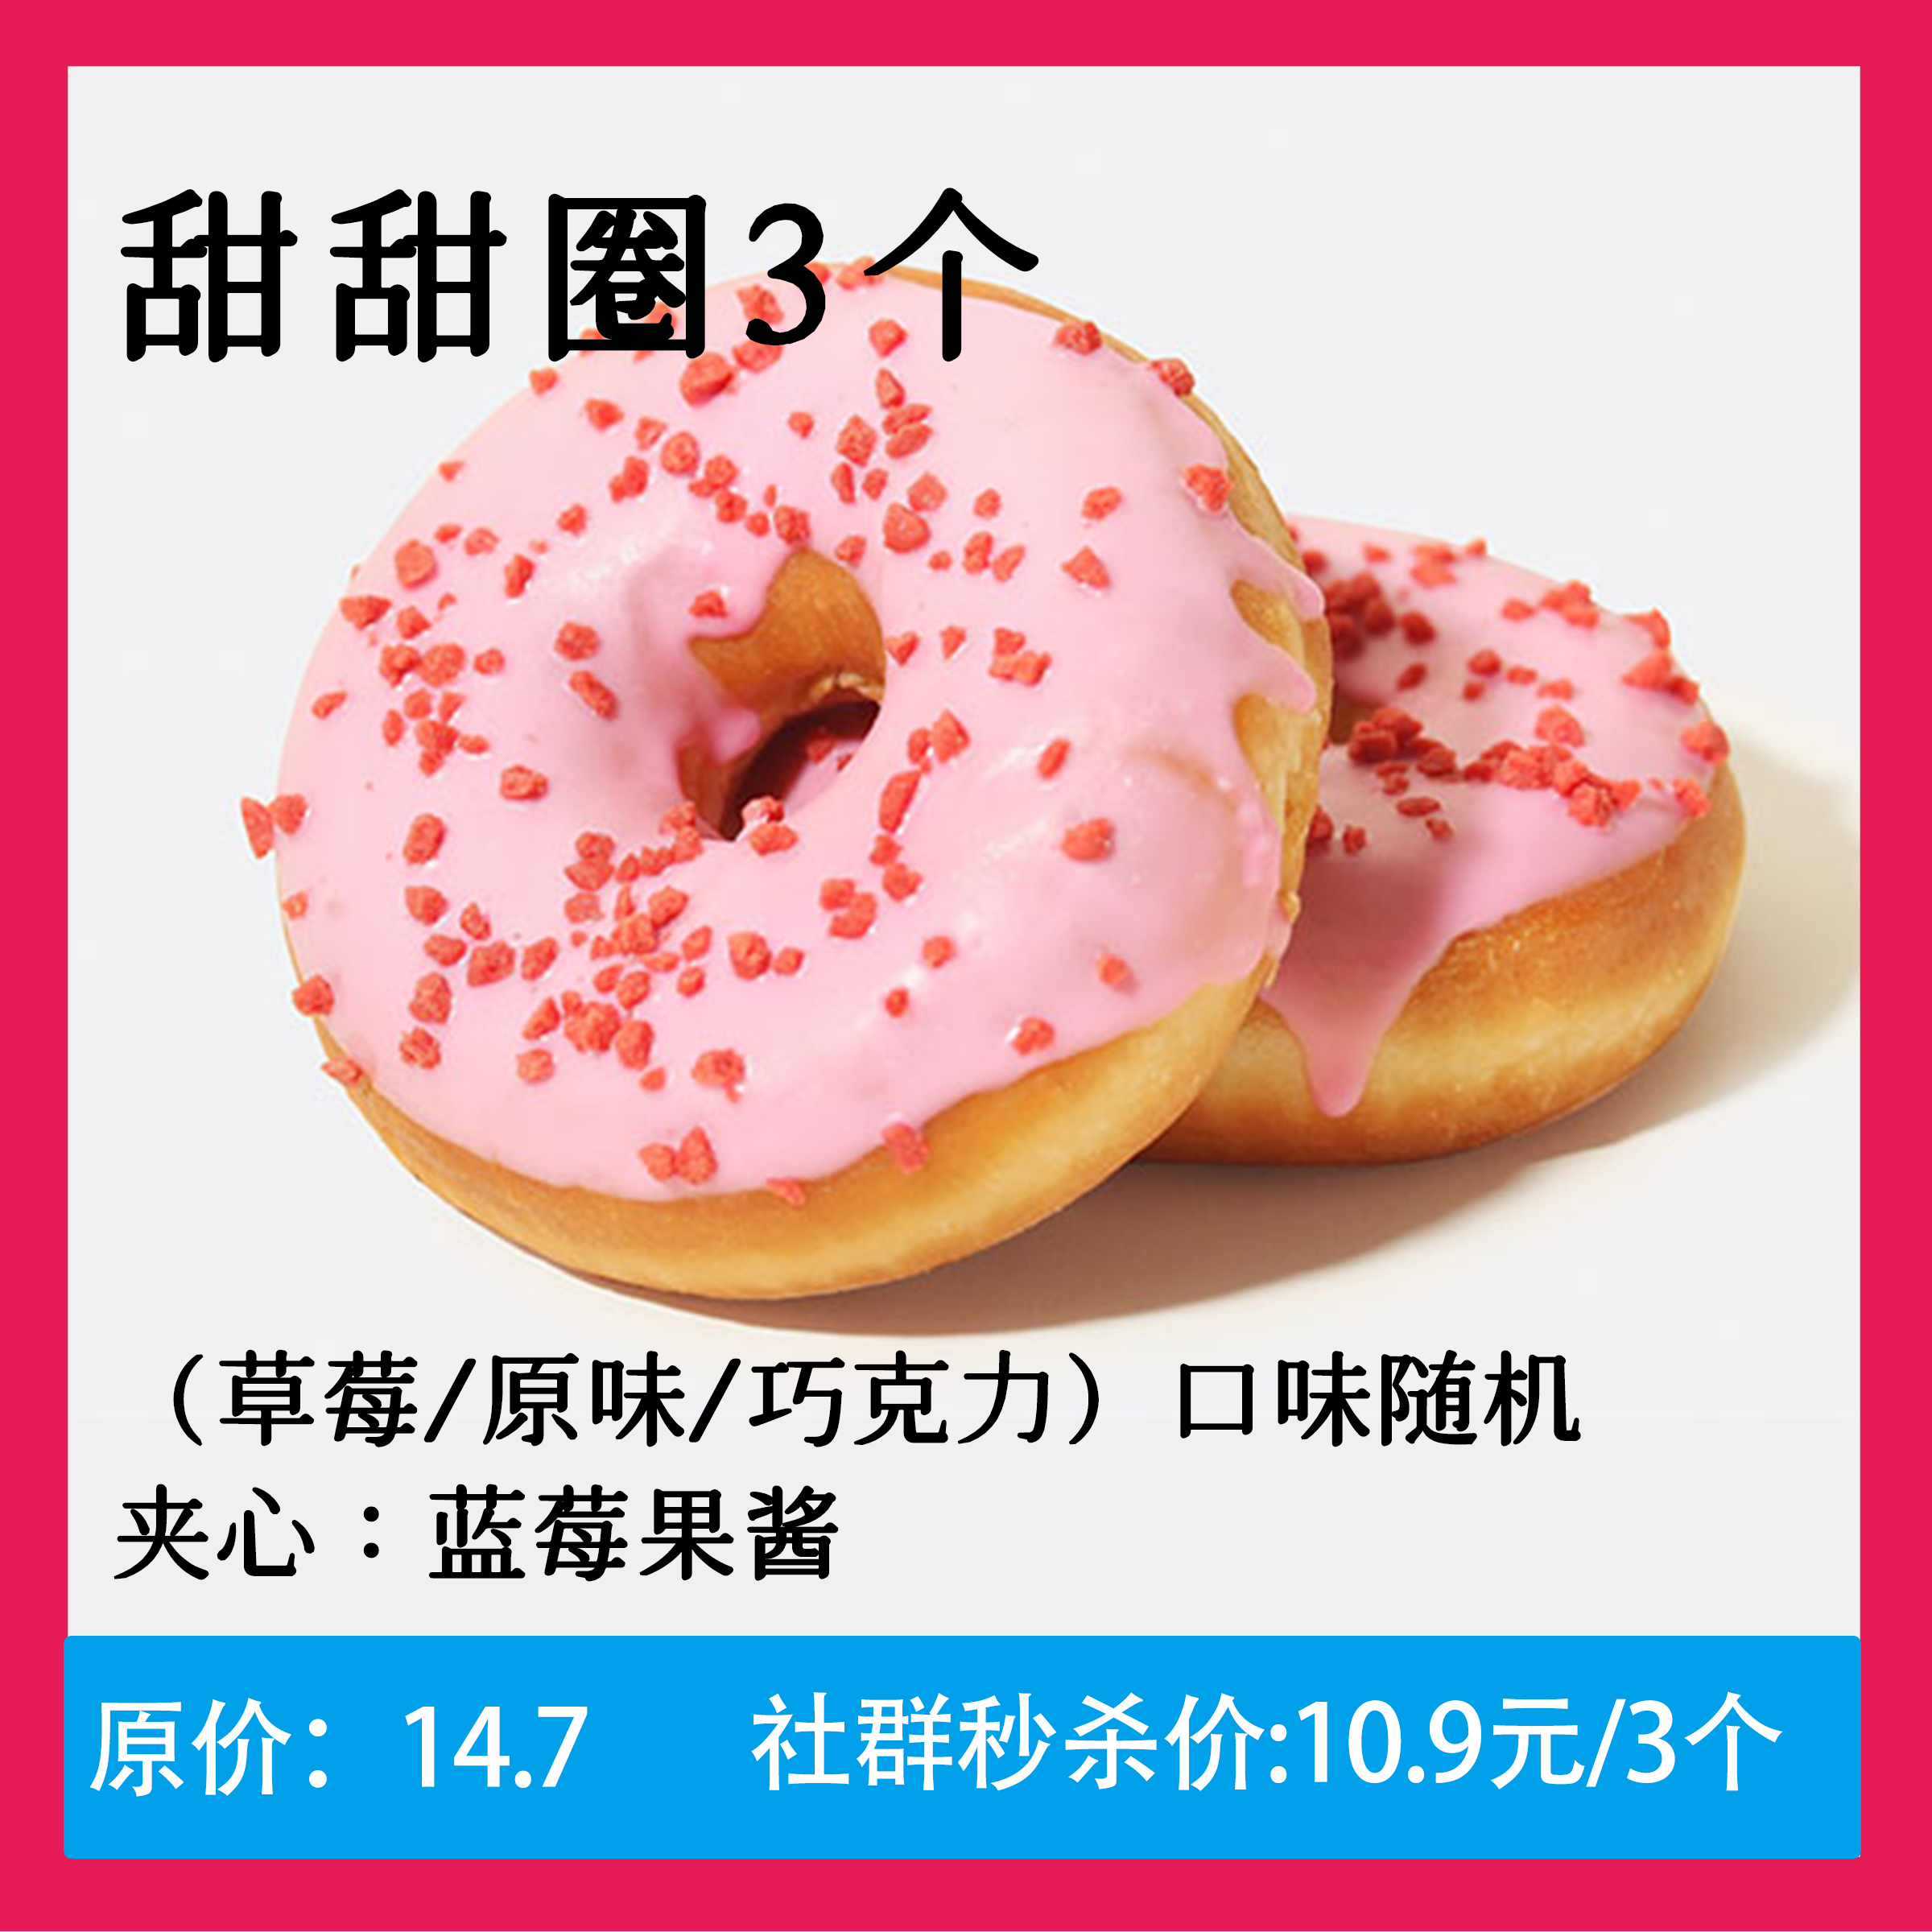 【10.9元秒杀】甜甜圈3个